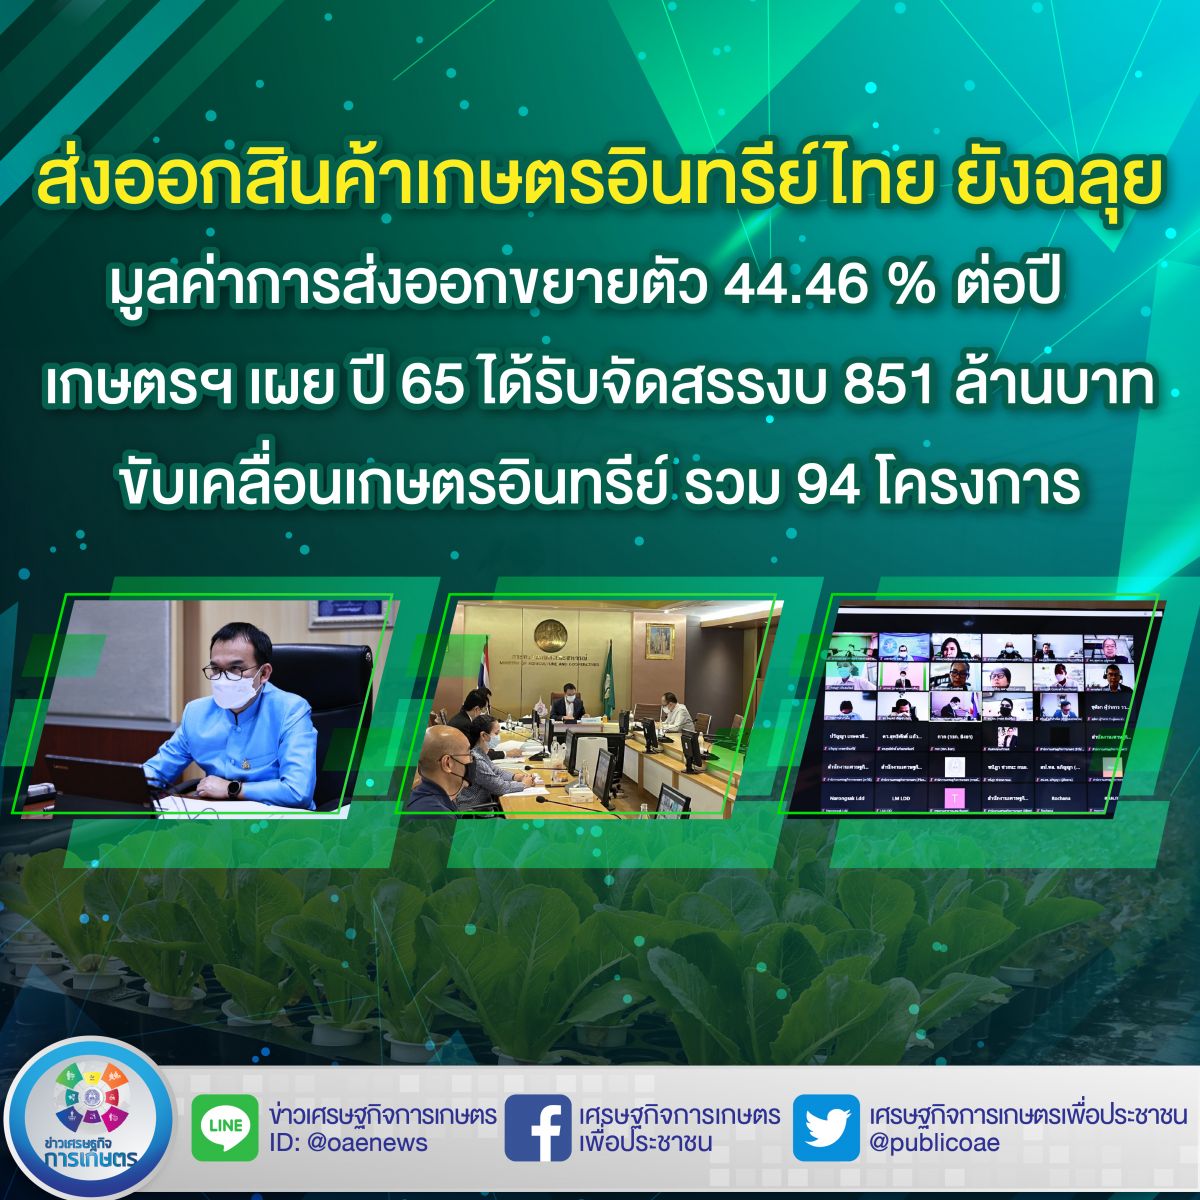 ส่งออกสินค้าเกษตรอินทรีย์ไทย ยังฉลุย มูลค่าการส่งออกขยายตัว 44.46 % ต่อปี เกษตรฯ เผย ปี 65 ได้รับจัดสรรงบ 851 ล้านบาท ขับเคลื่อนเกษตรอินทรีย์ รวม 94 โครงการ